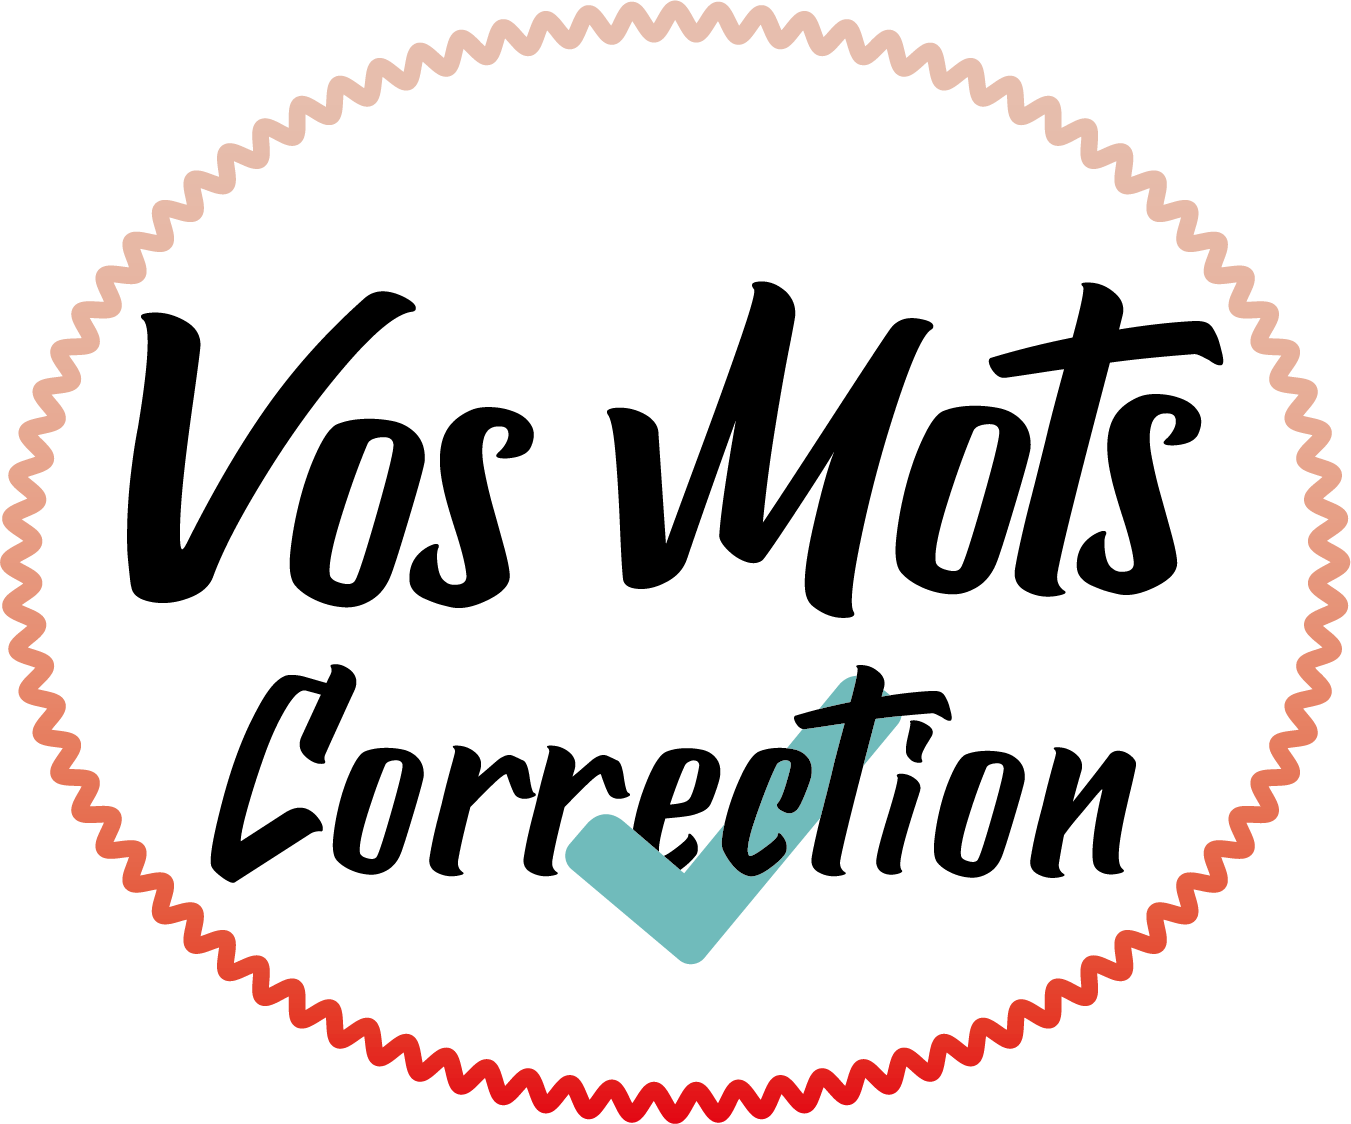 Logo du site avec écrit "Vos Mots Correction"